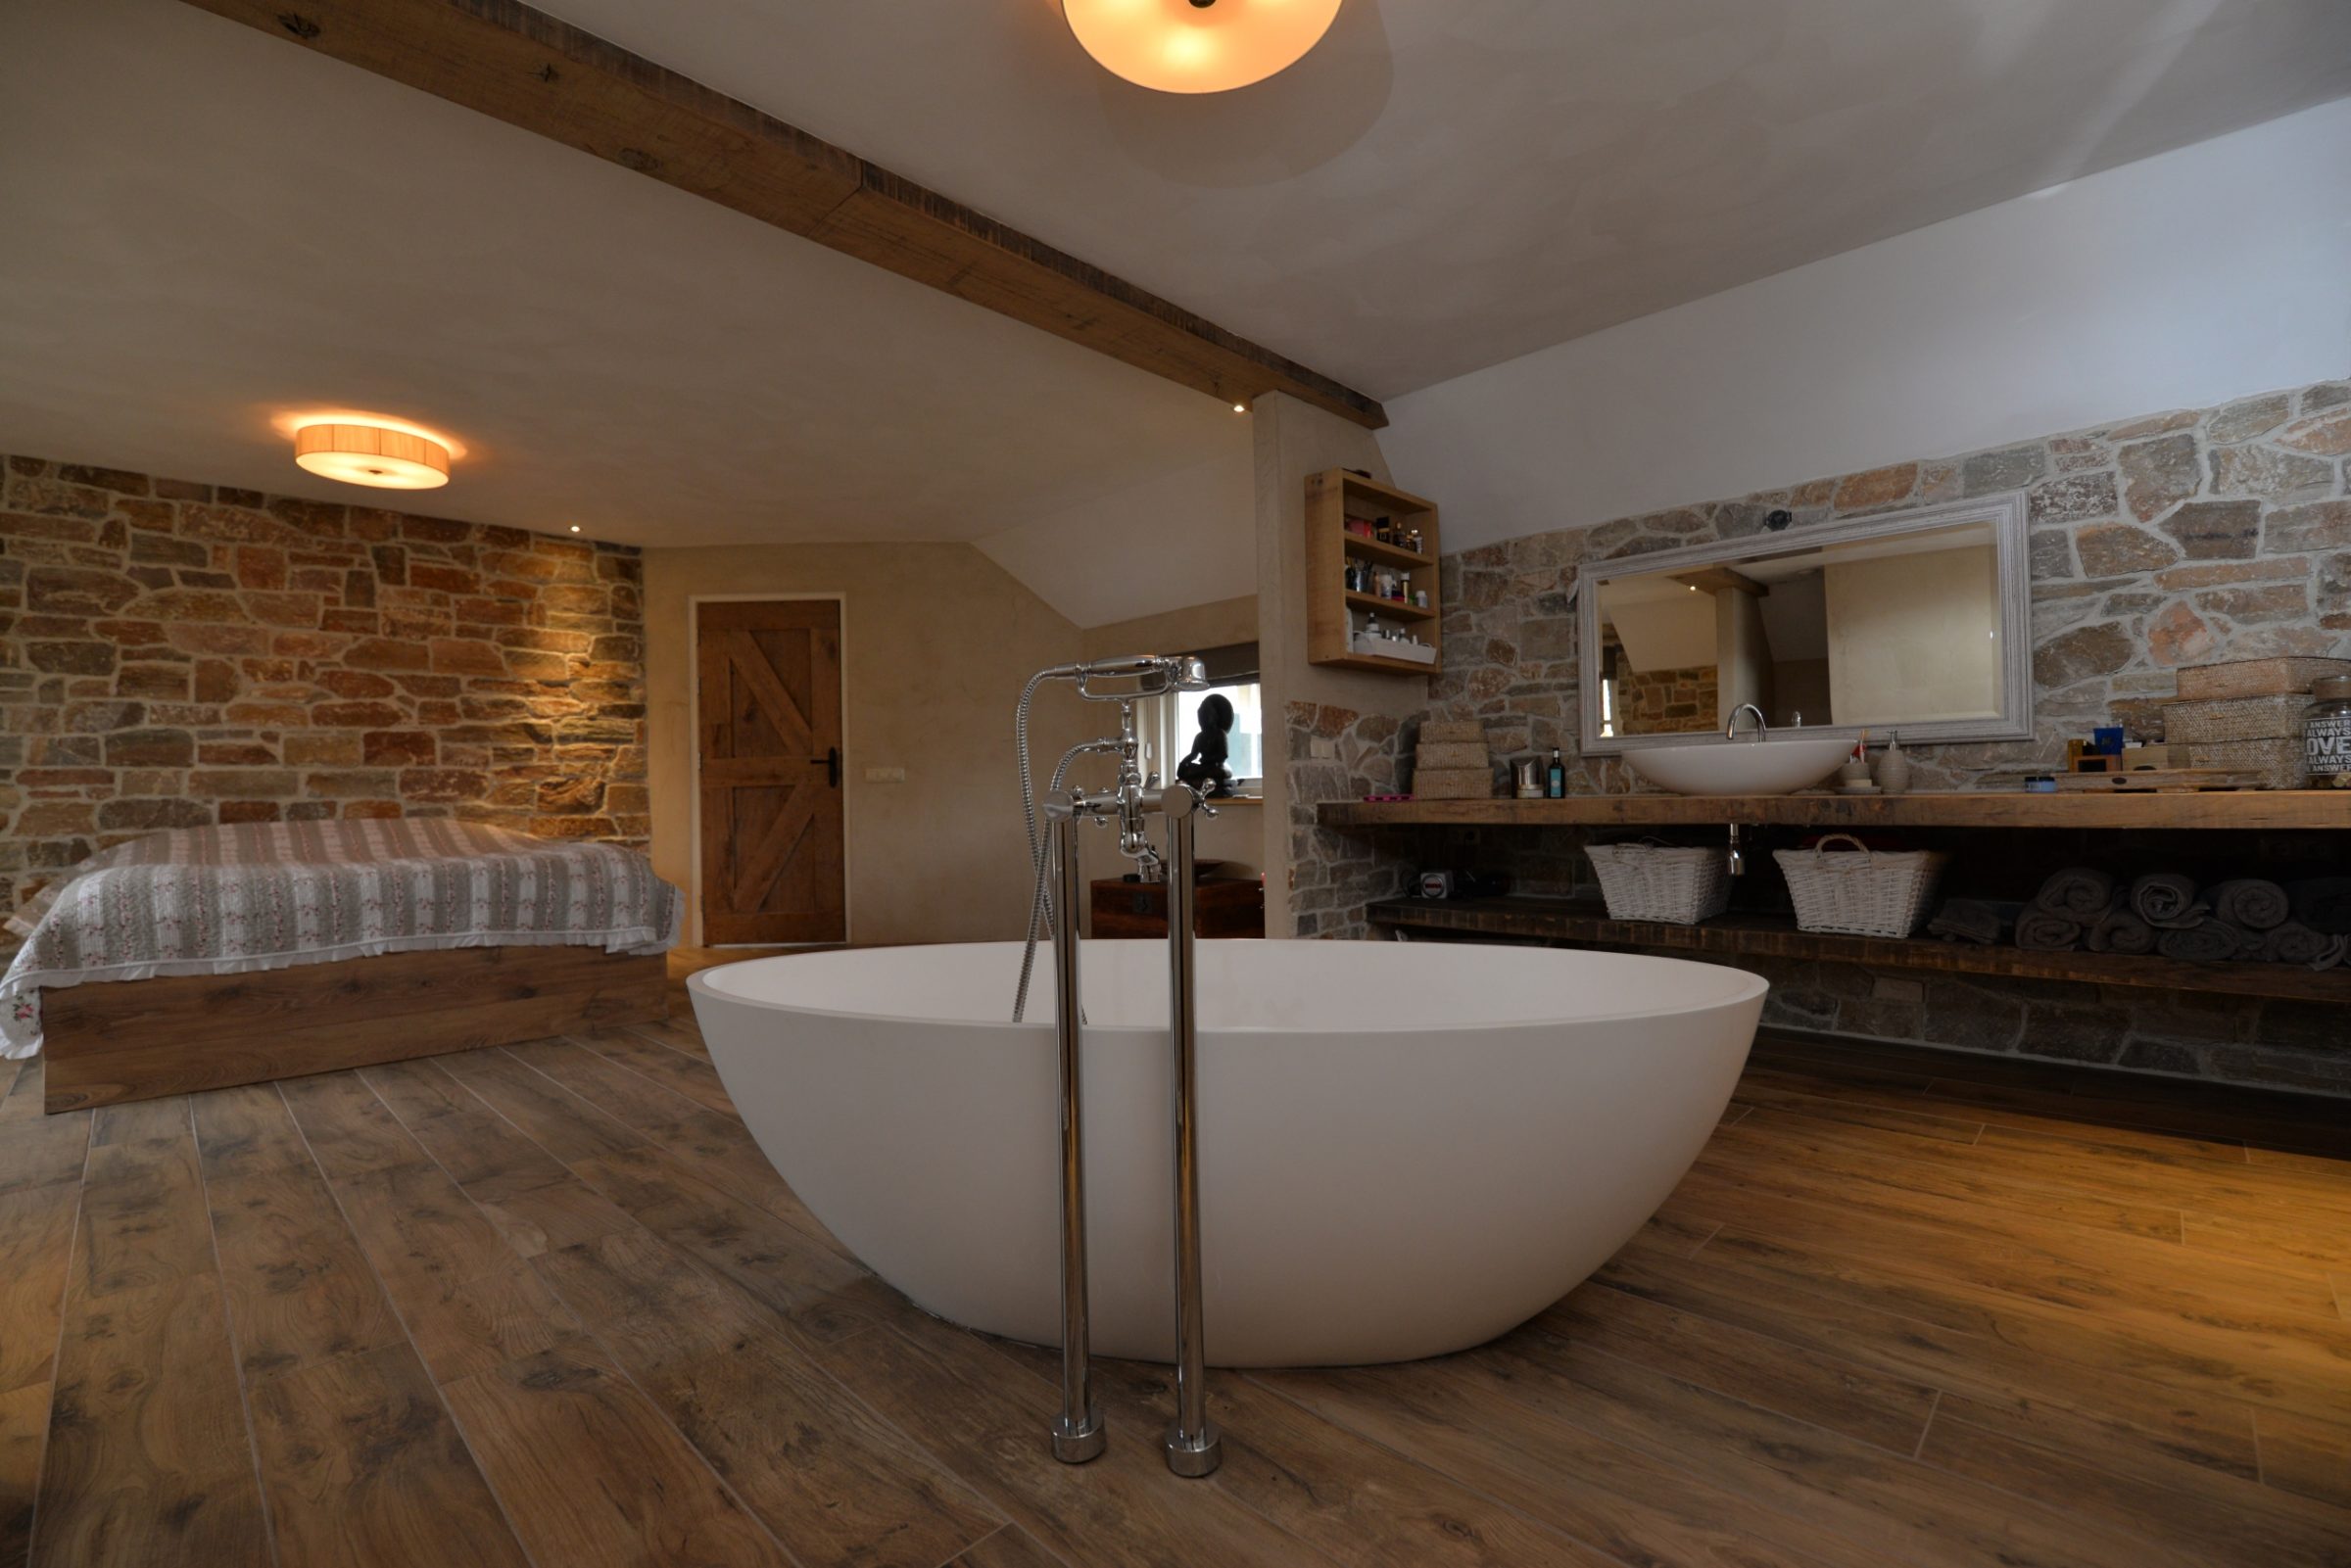 Luxe slaapkamer en badkamer voorzien van natuurstenen muren met Steenstrips.